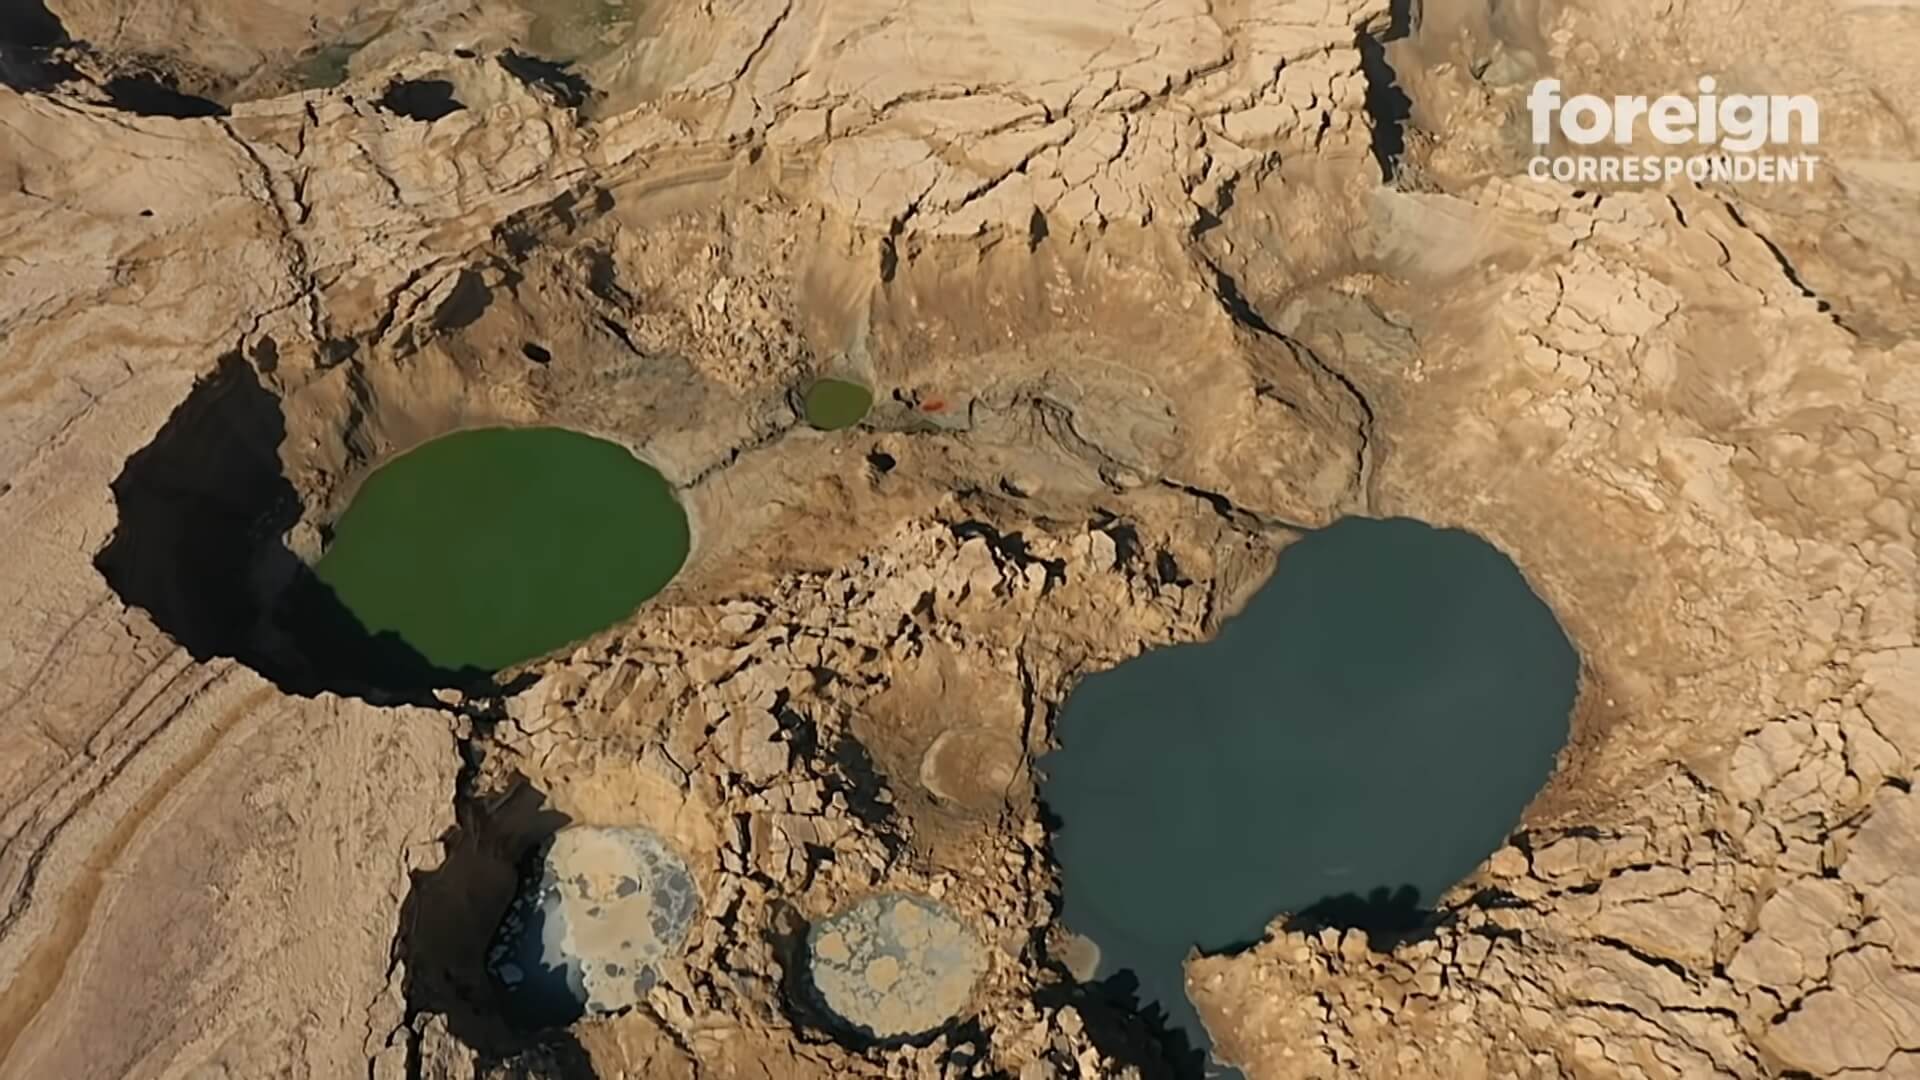 De Dode Zee sterft door watertekort